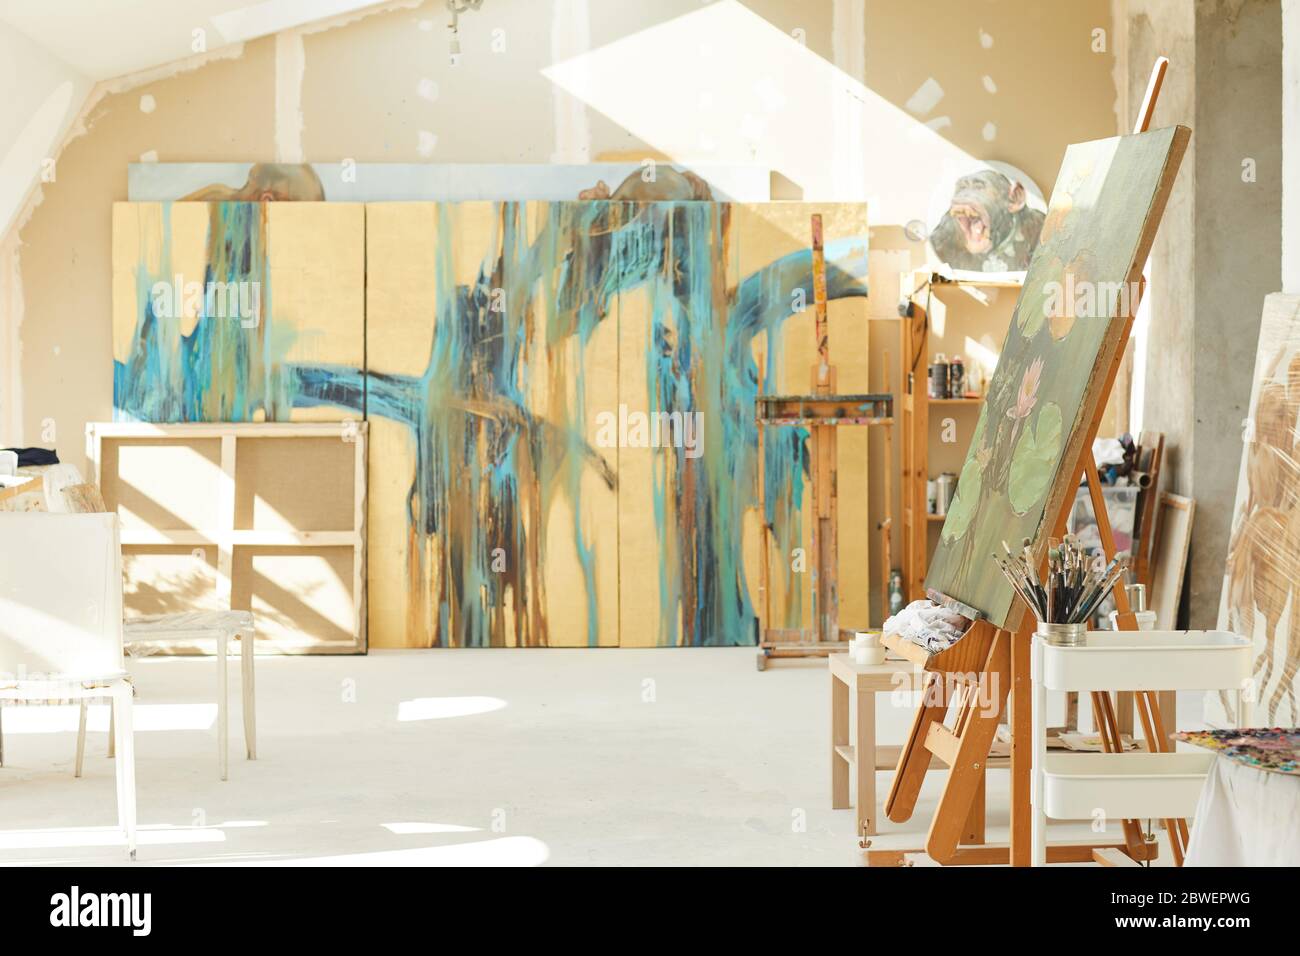 Hintergrundbild von leeren Kunststudio im Dachboden von Sonnenlicht beleuchtet, Fokus auf Staffelei und abstrakte Gemälde, kopieren Raum Stockfoto